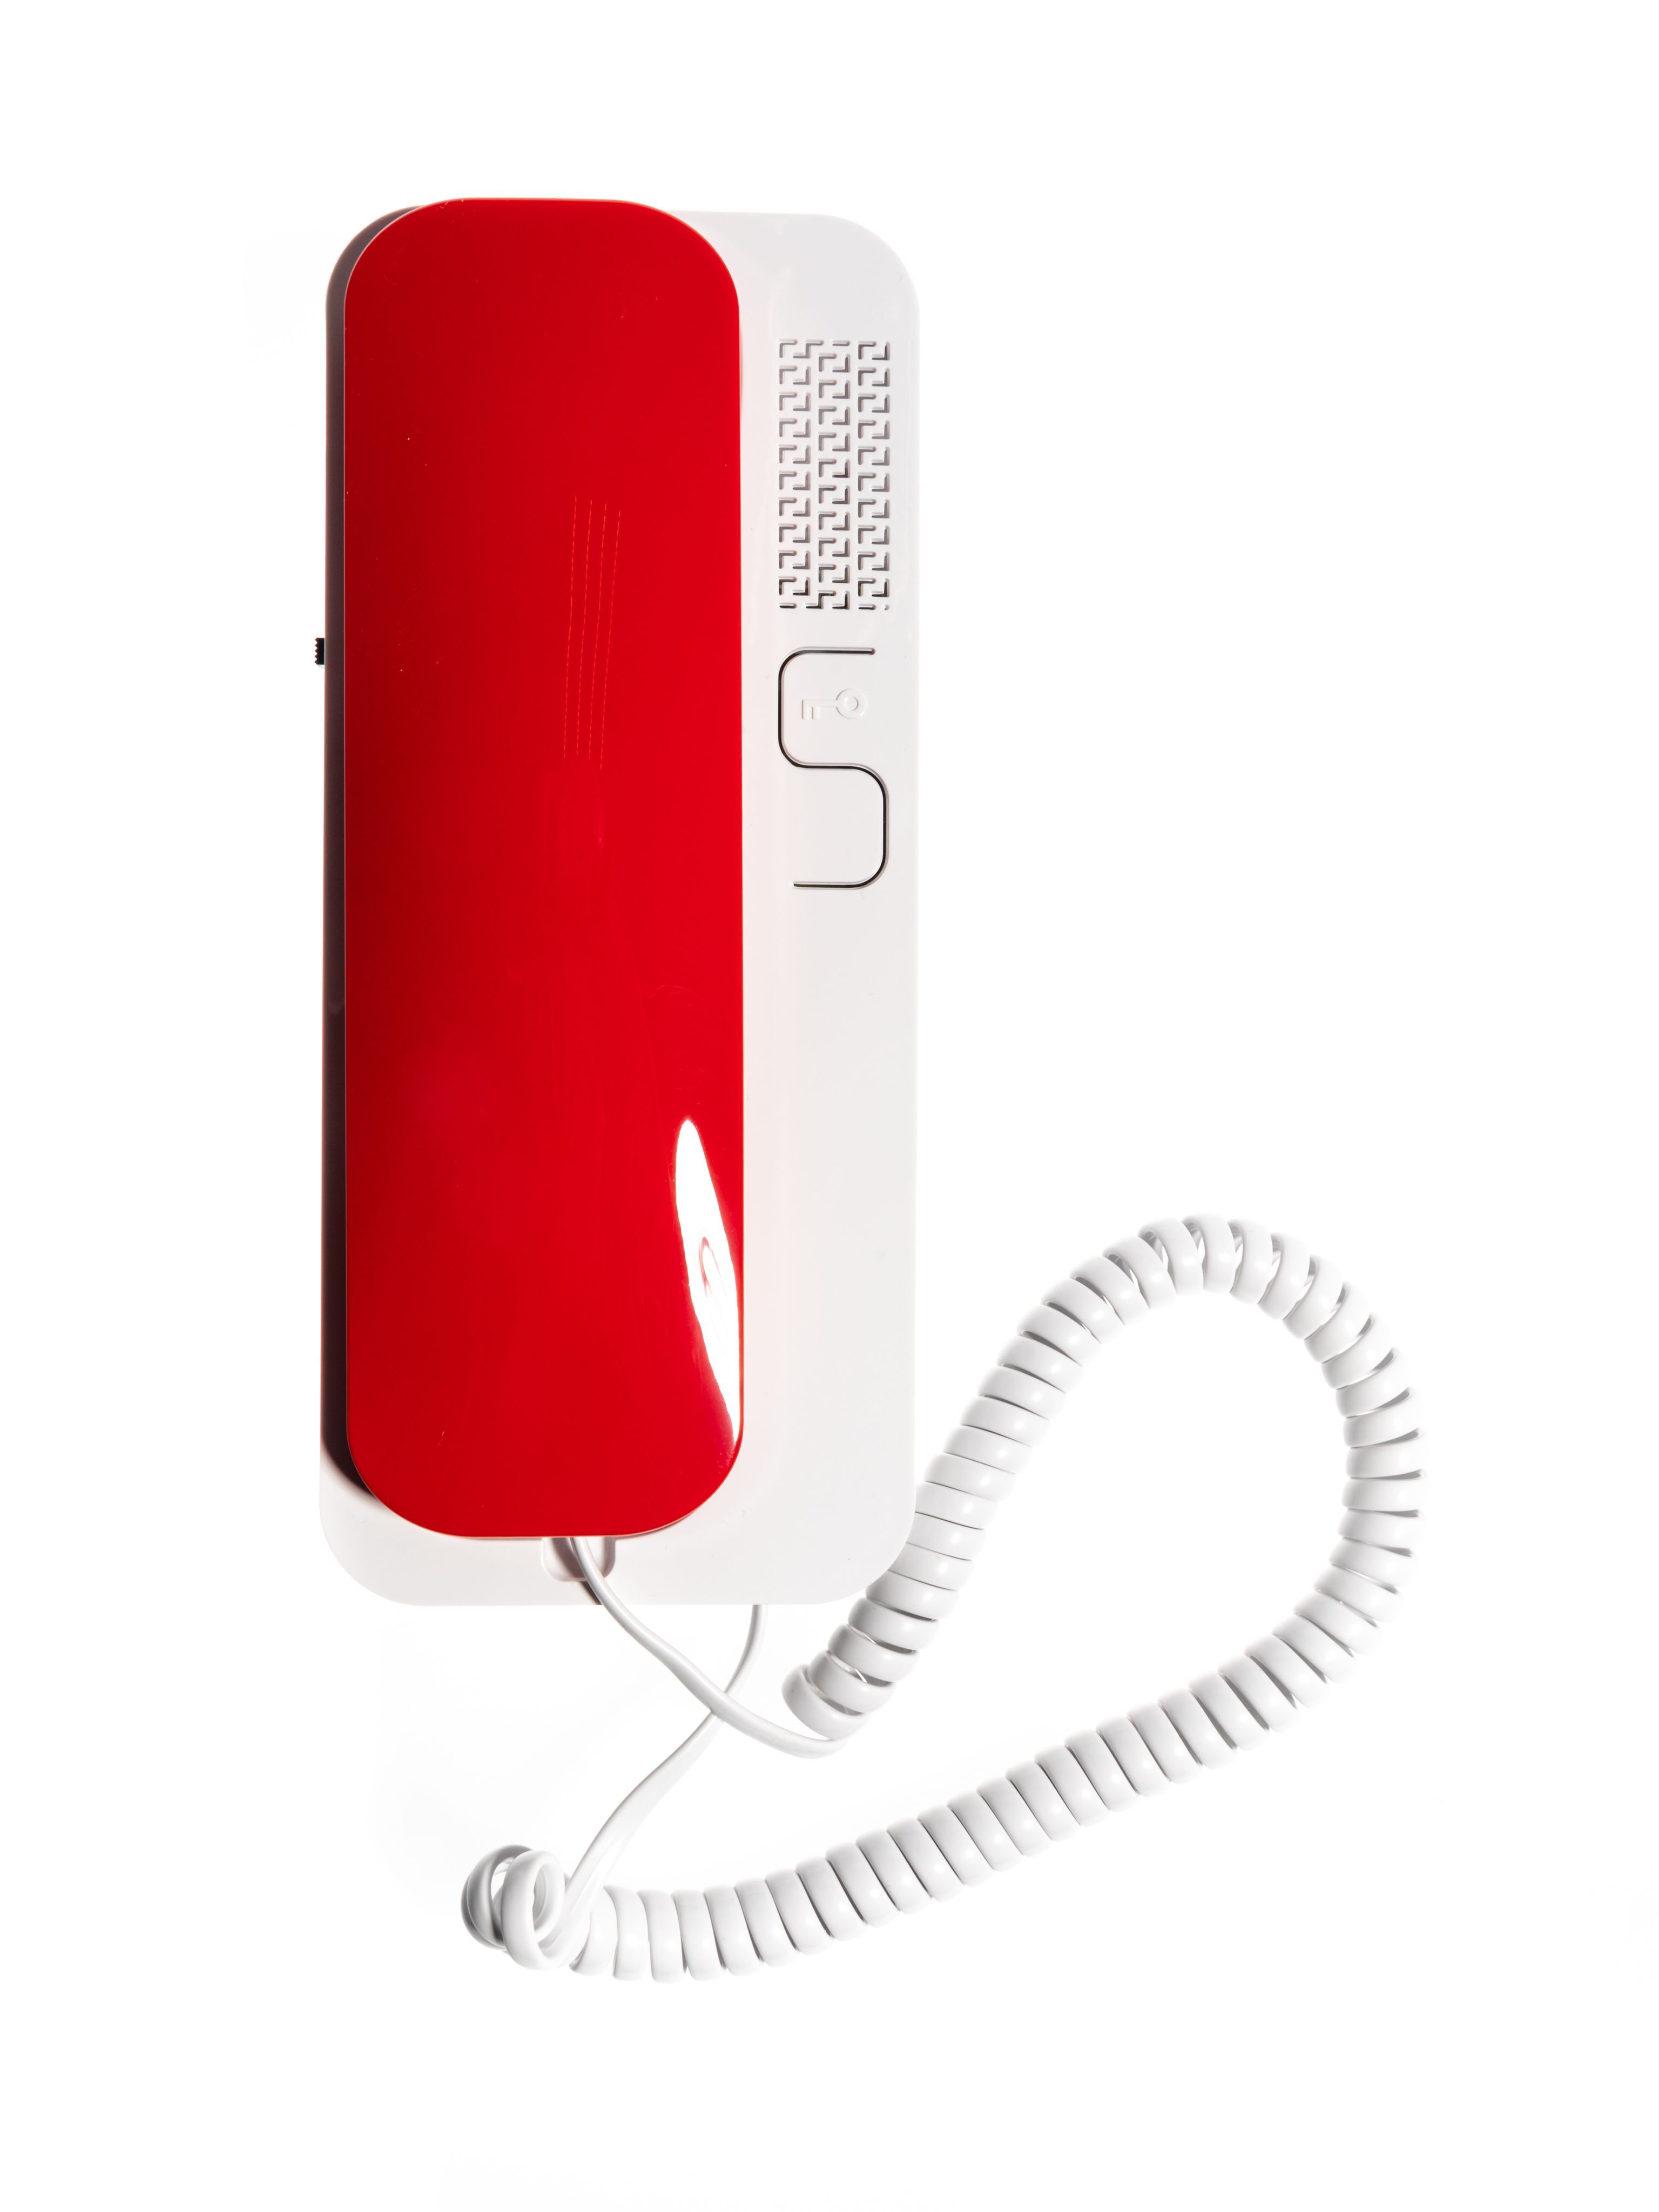 Трубка домофона Цифрал Unifon Smart U (для координатных домофонов) красно-белая